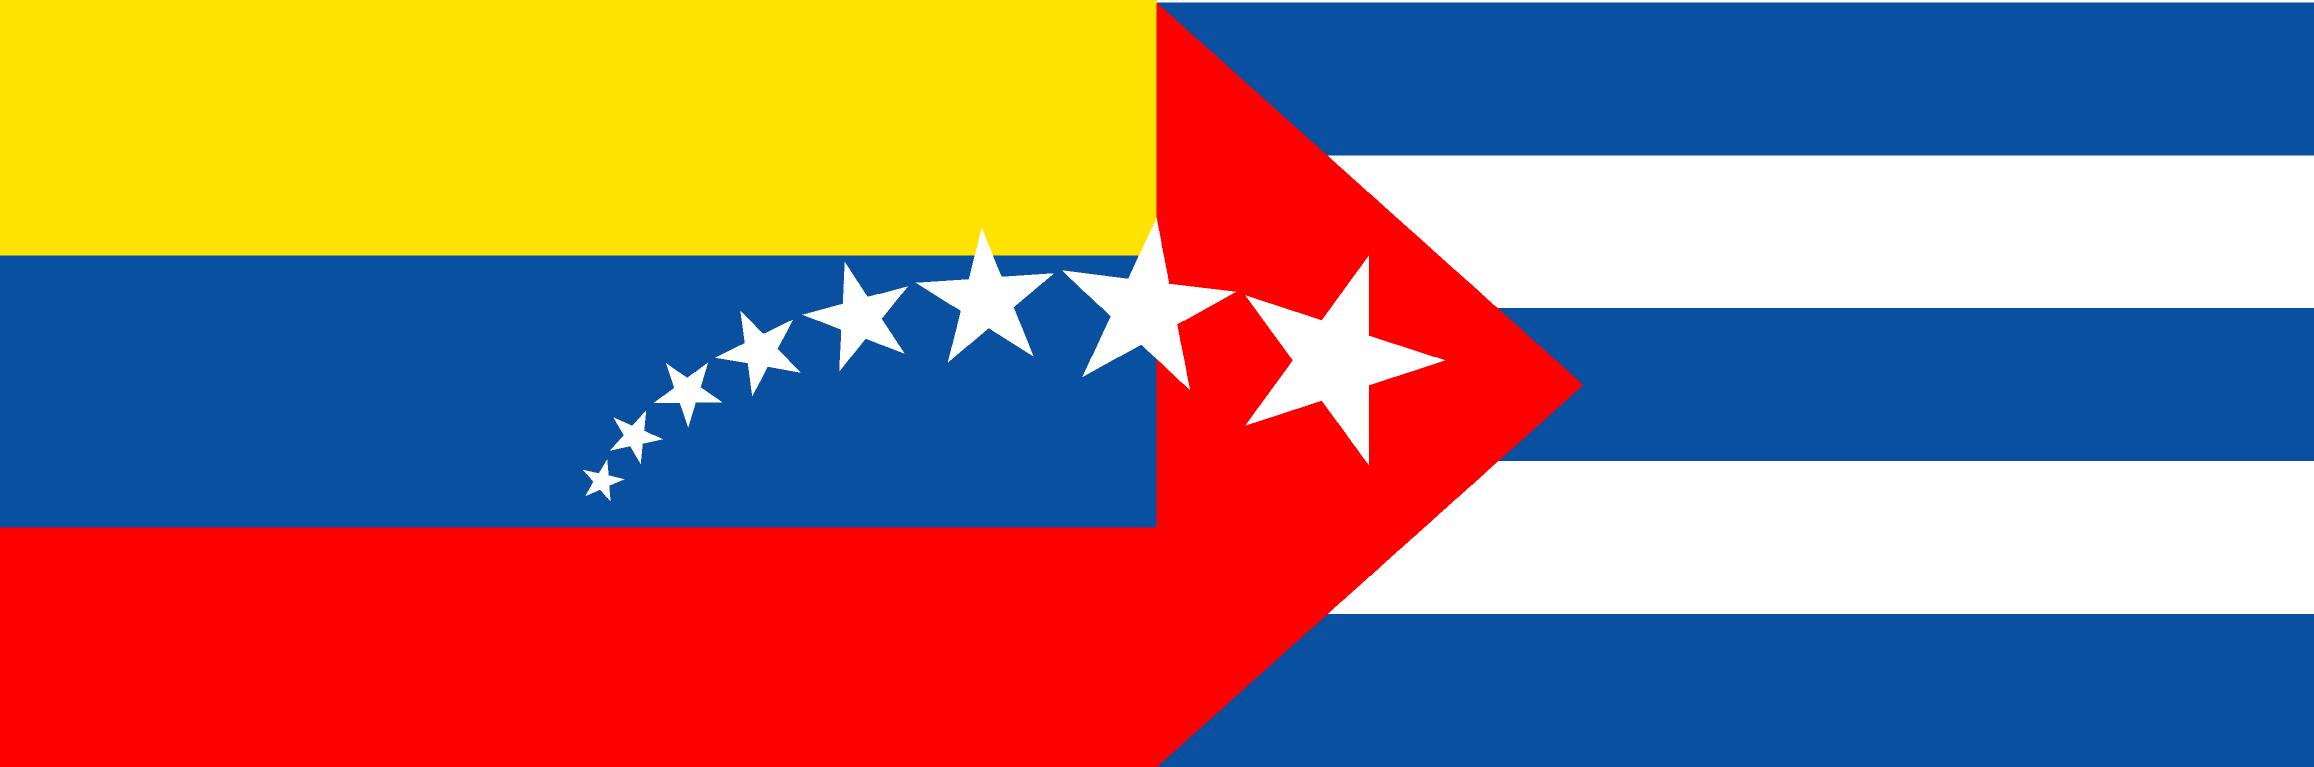 Banderas Cuba y Venezuela